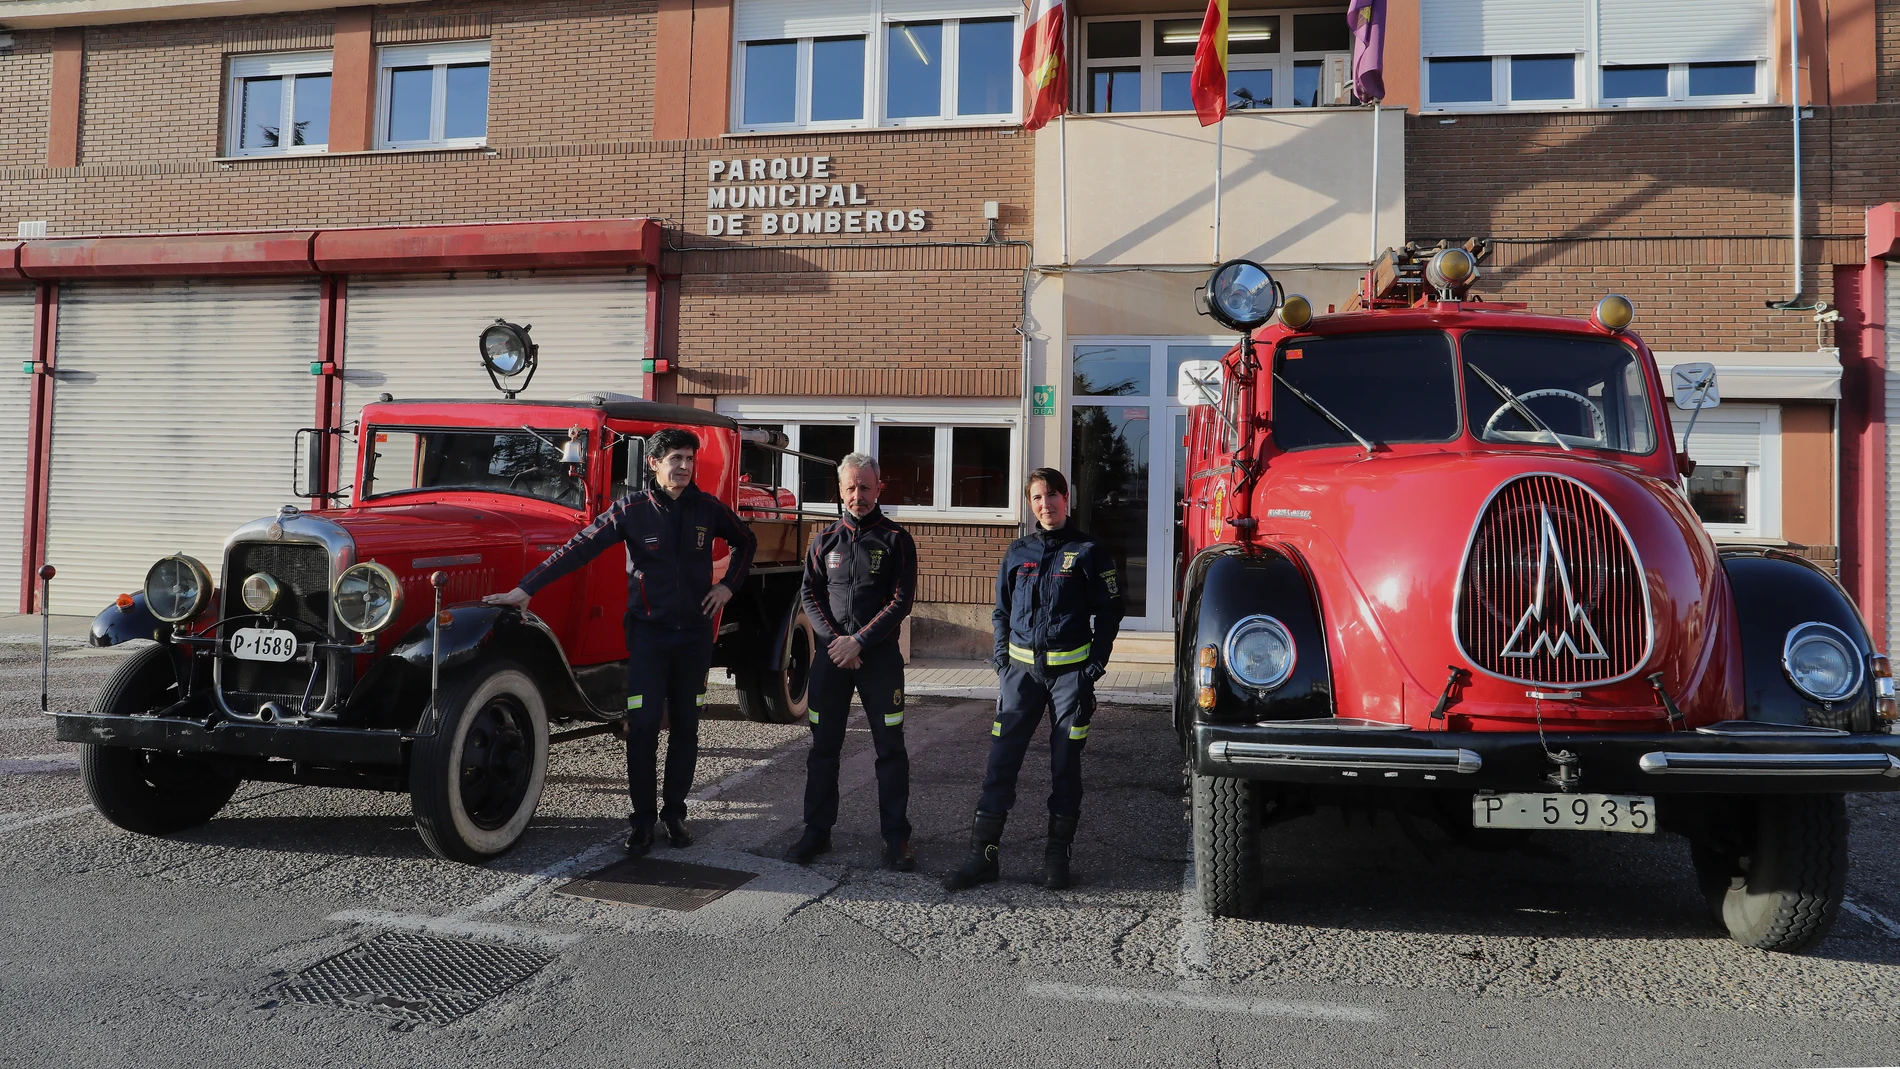 El jefe del parque de bomberos, Javier Villena(C), el sargento Abel Allende(I), y la bombera Isabel Villán junto a los dos camiones antiguos conocidos el Abuelo y la Abuela